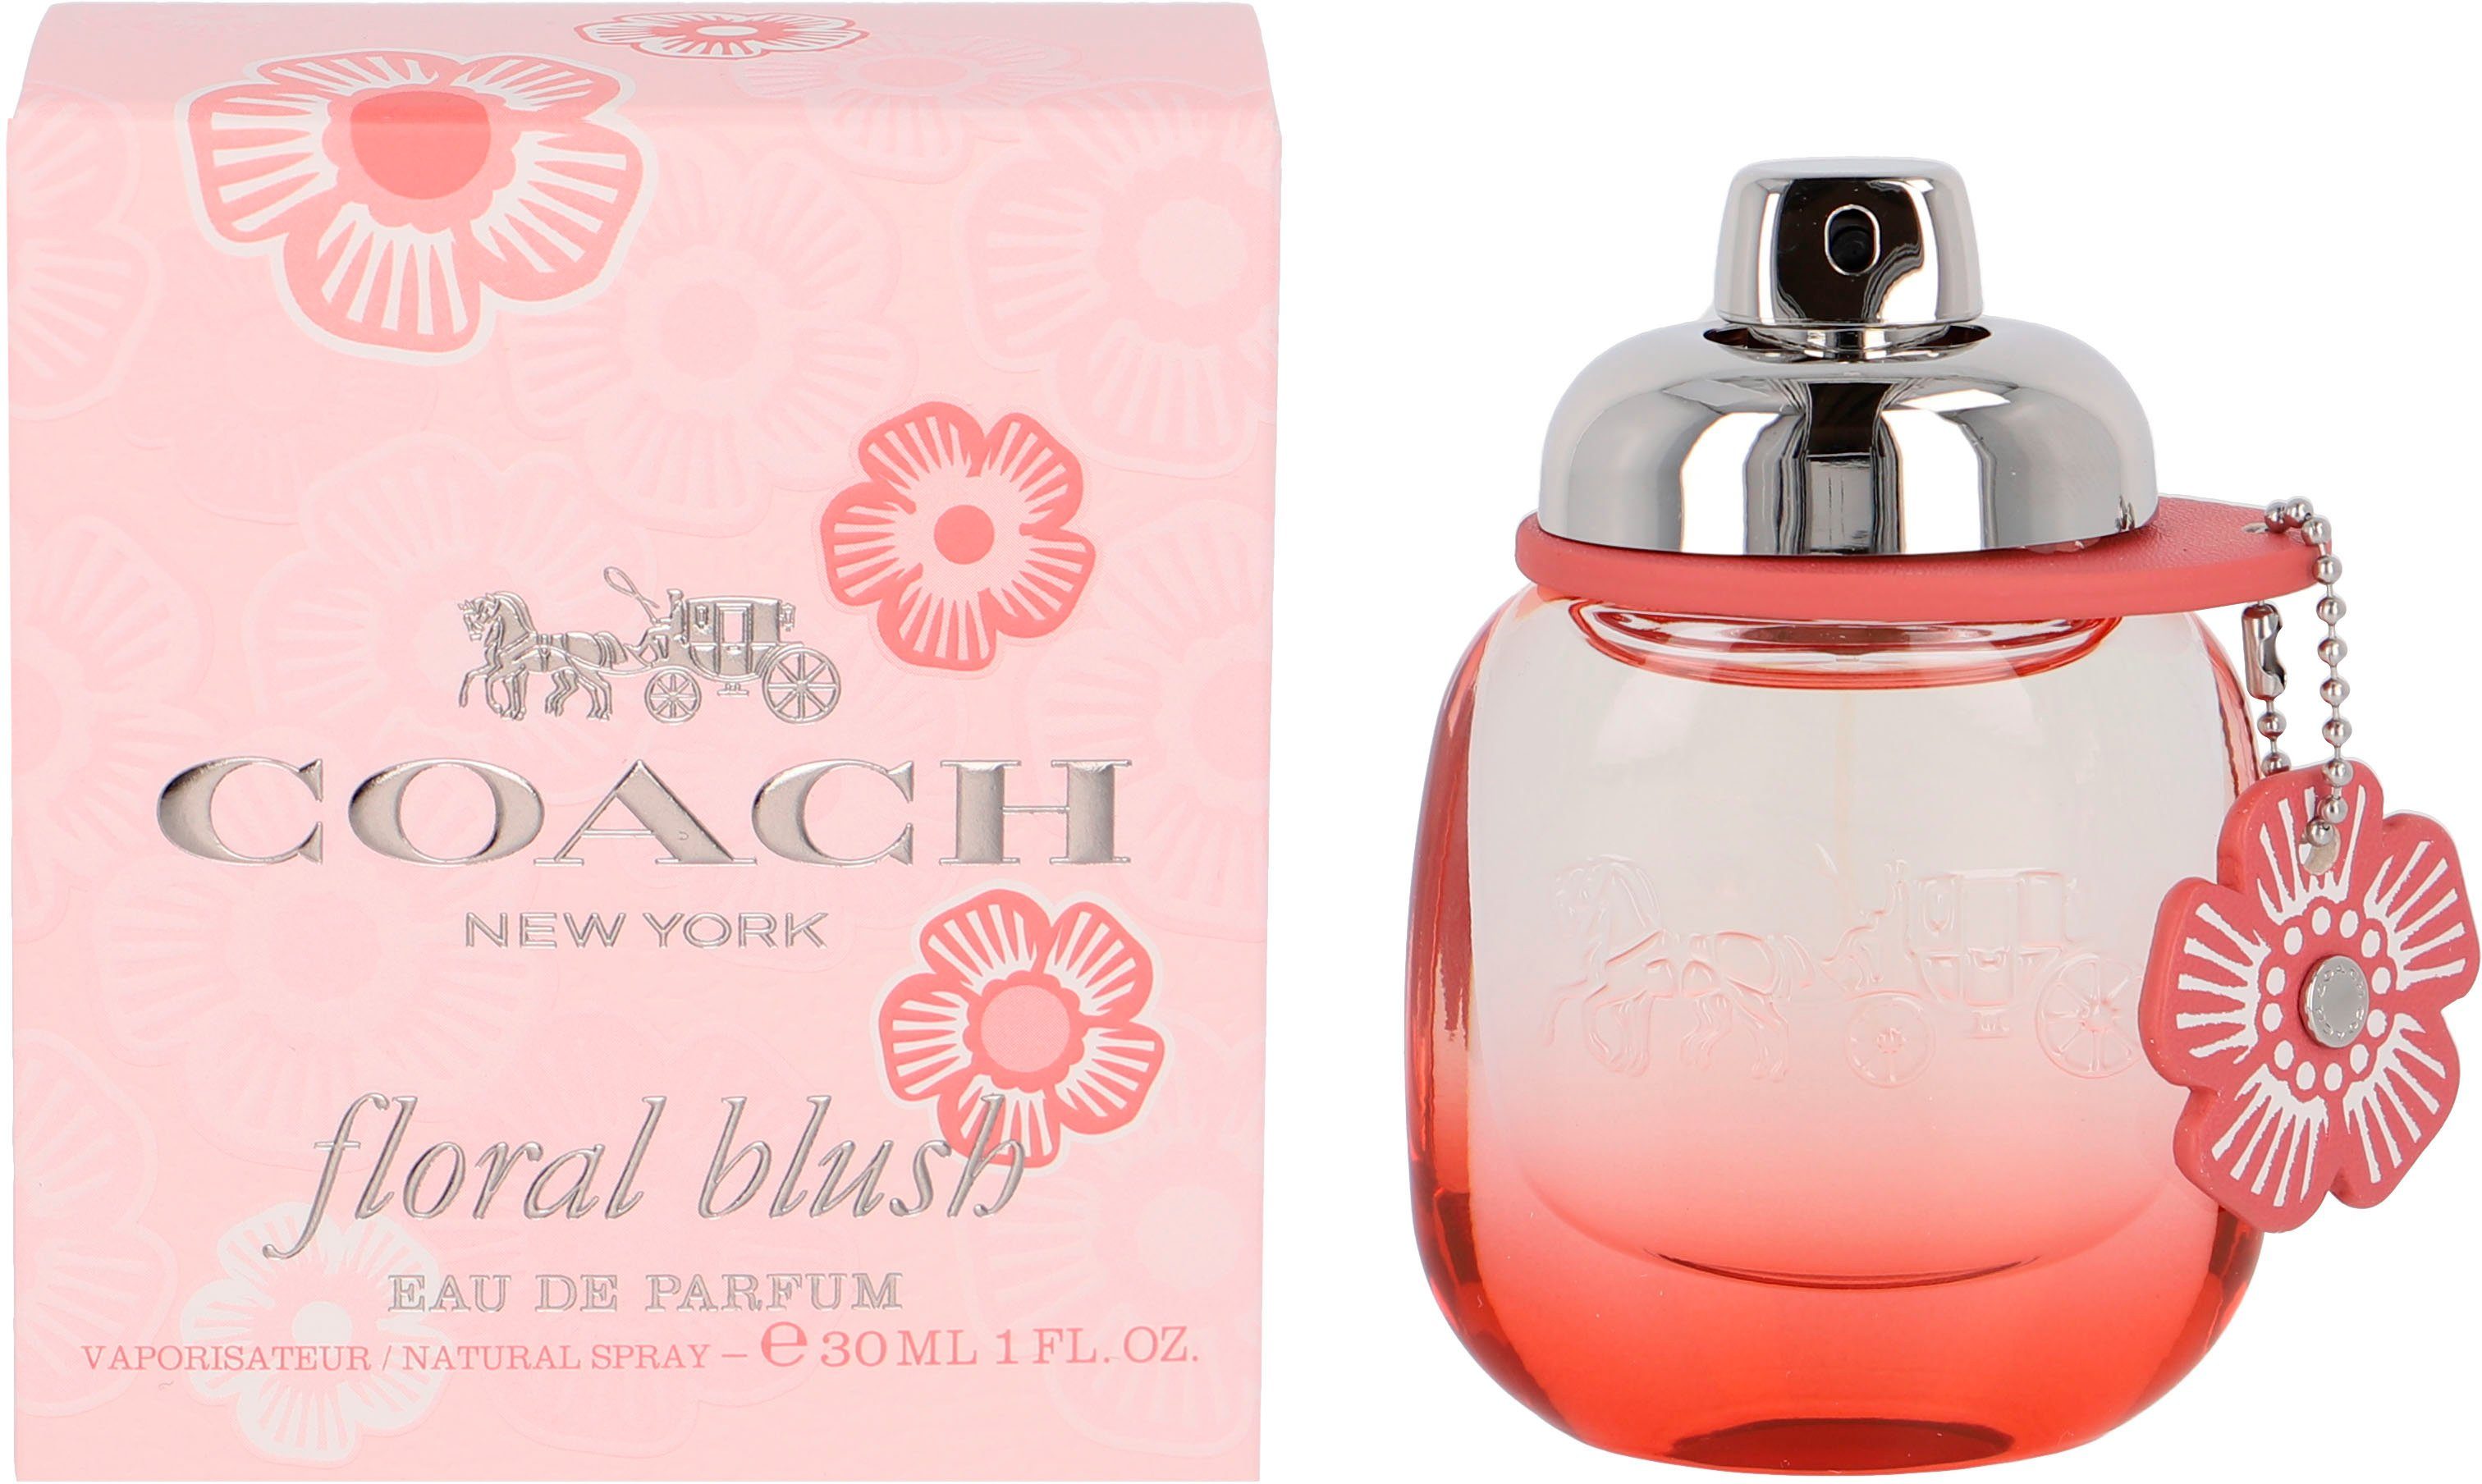 Floral Eau de Blush COACH Parfum